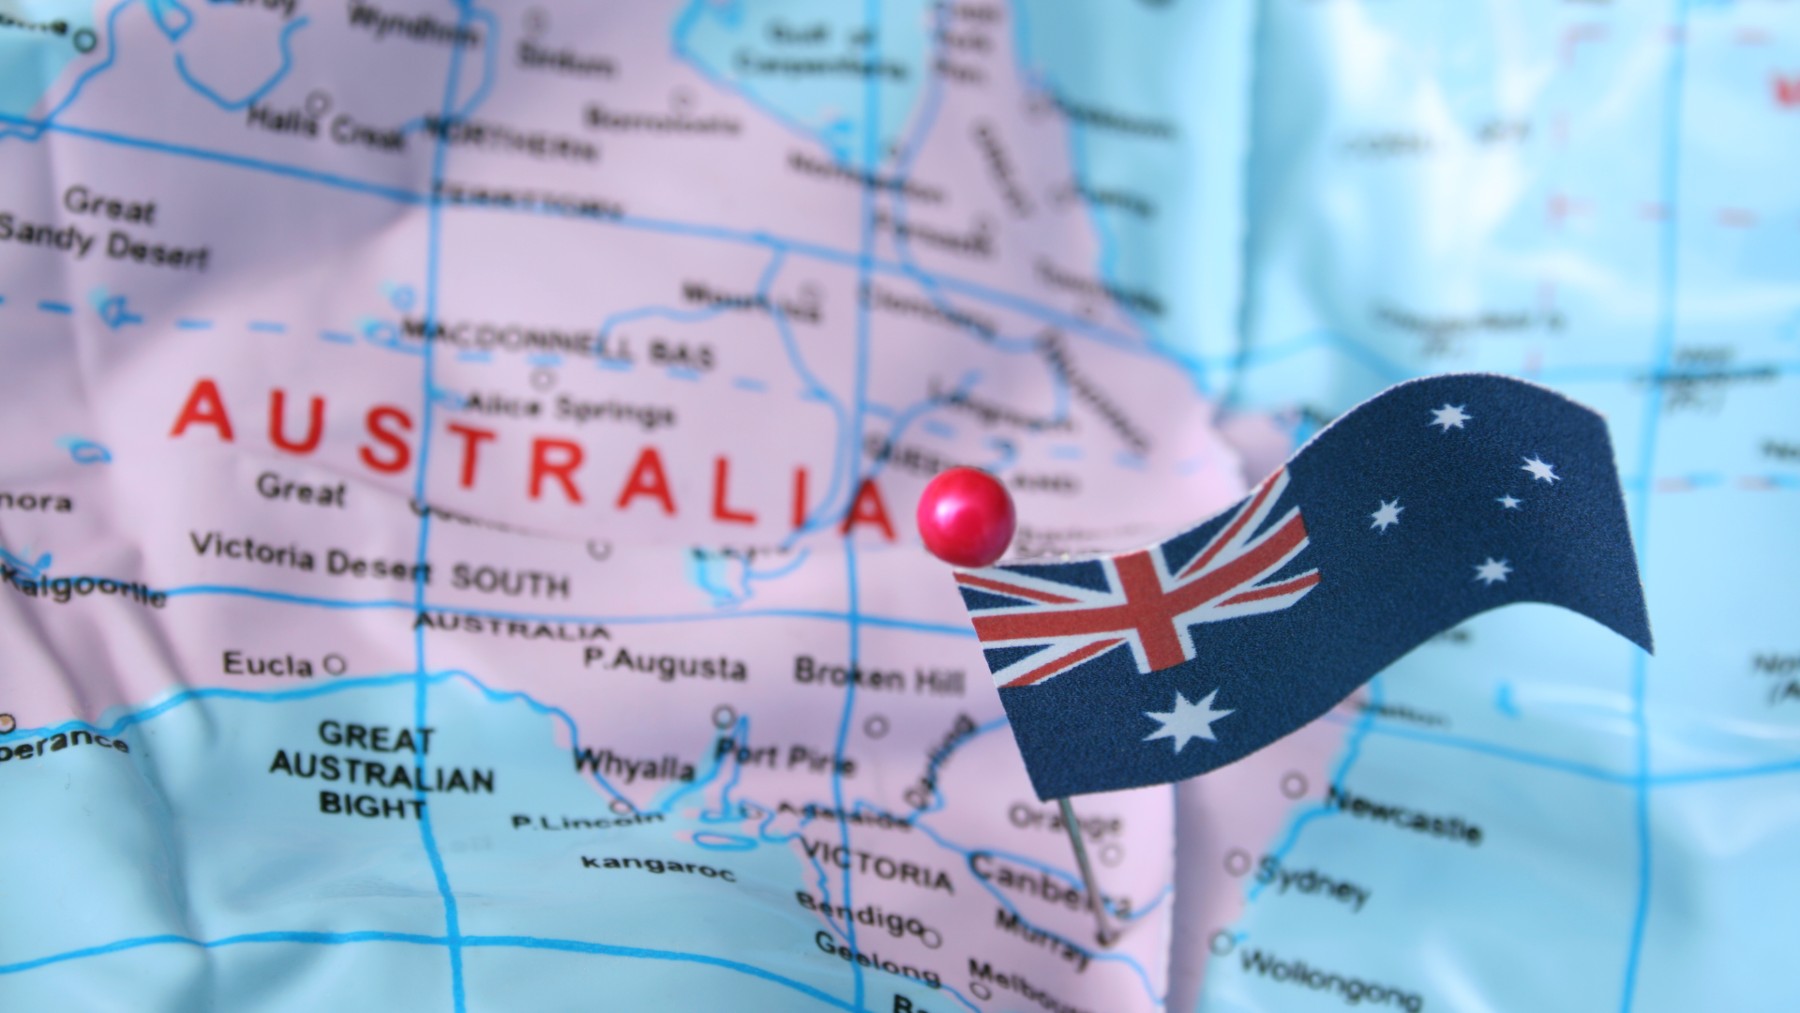 Migrate to Australia through Family Sponsored Visas.